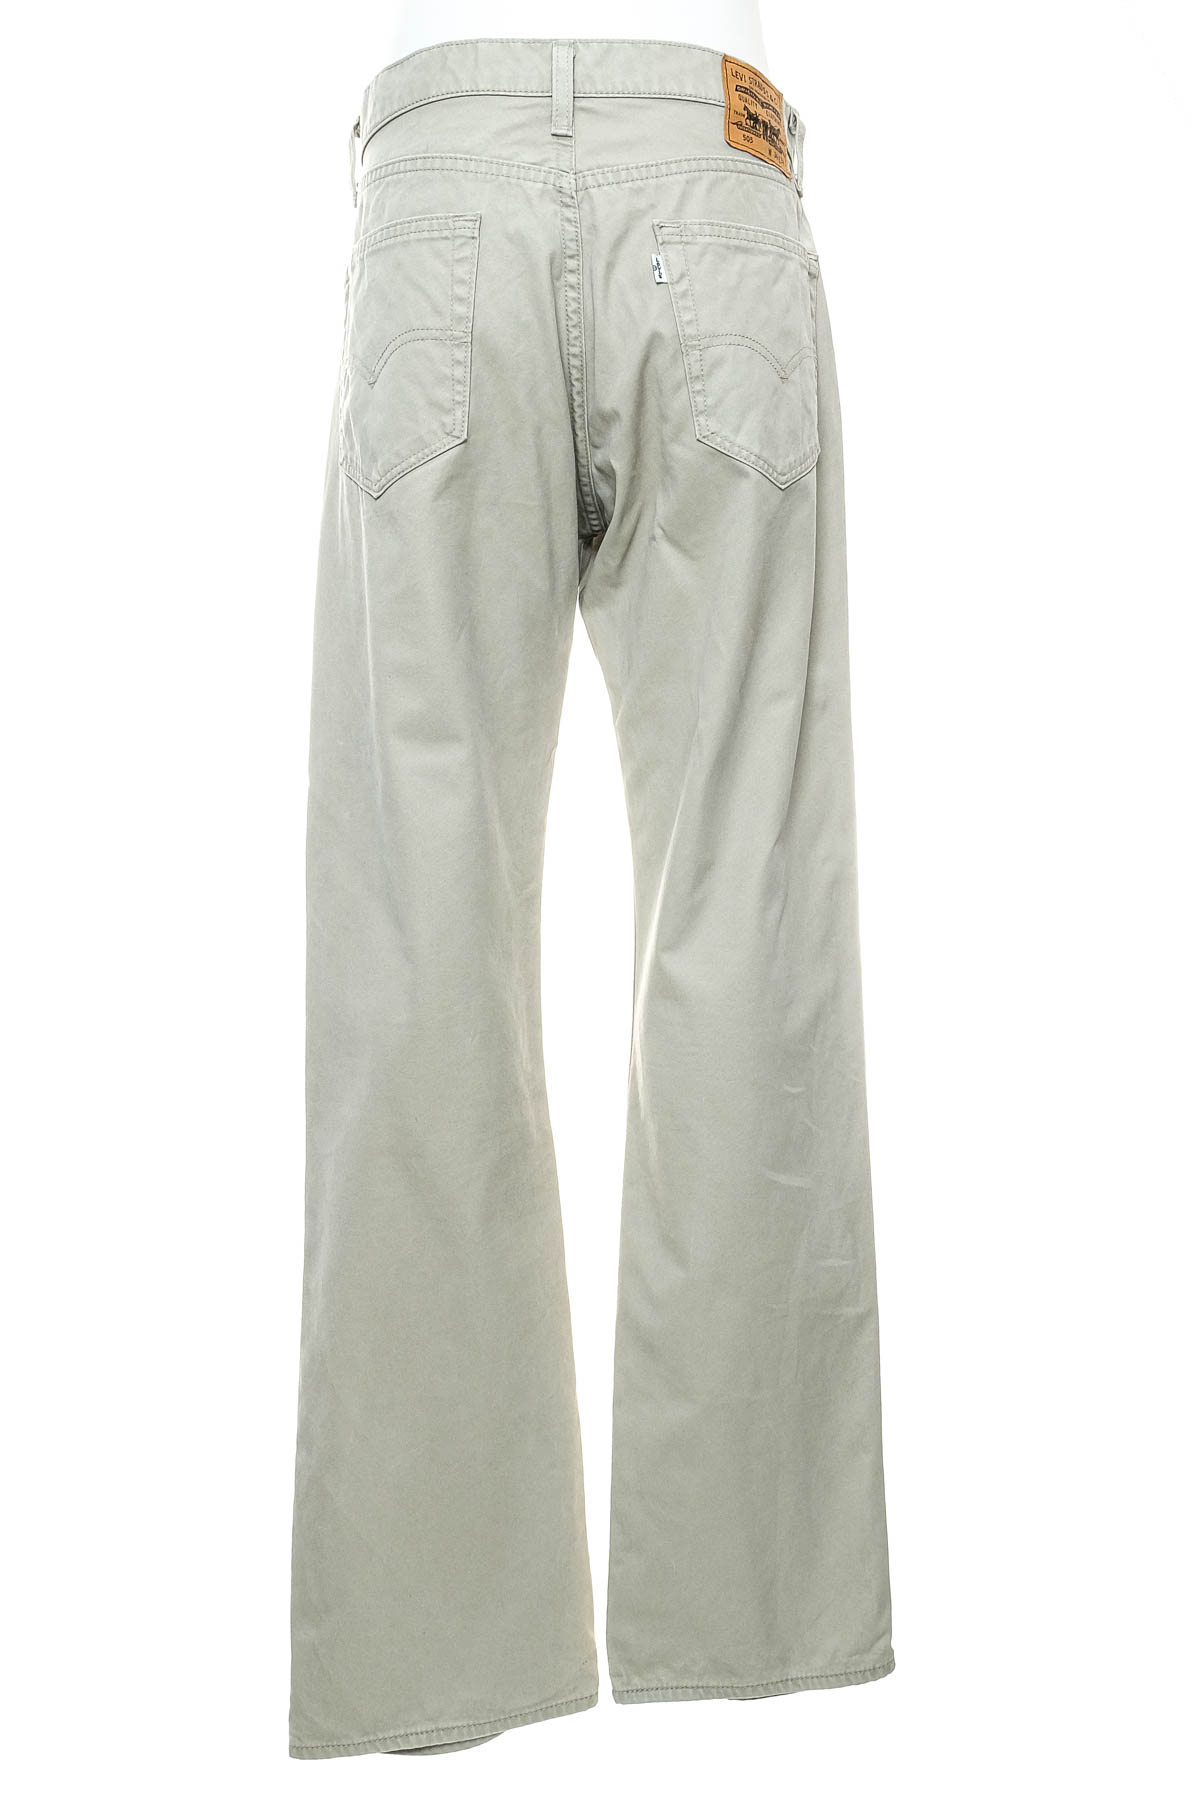 Pantalon pentru bărbați - Levi Strauss & Co. - 1